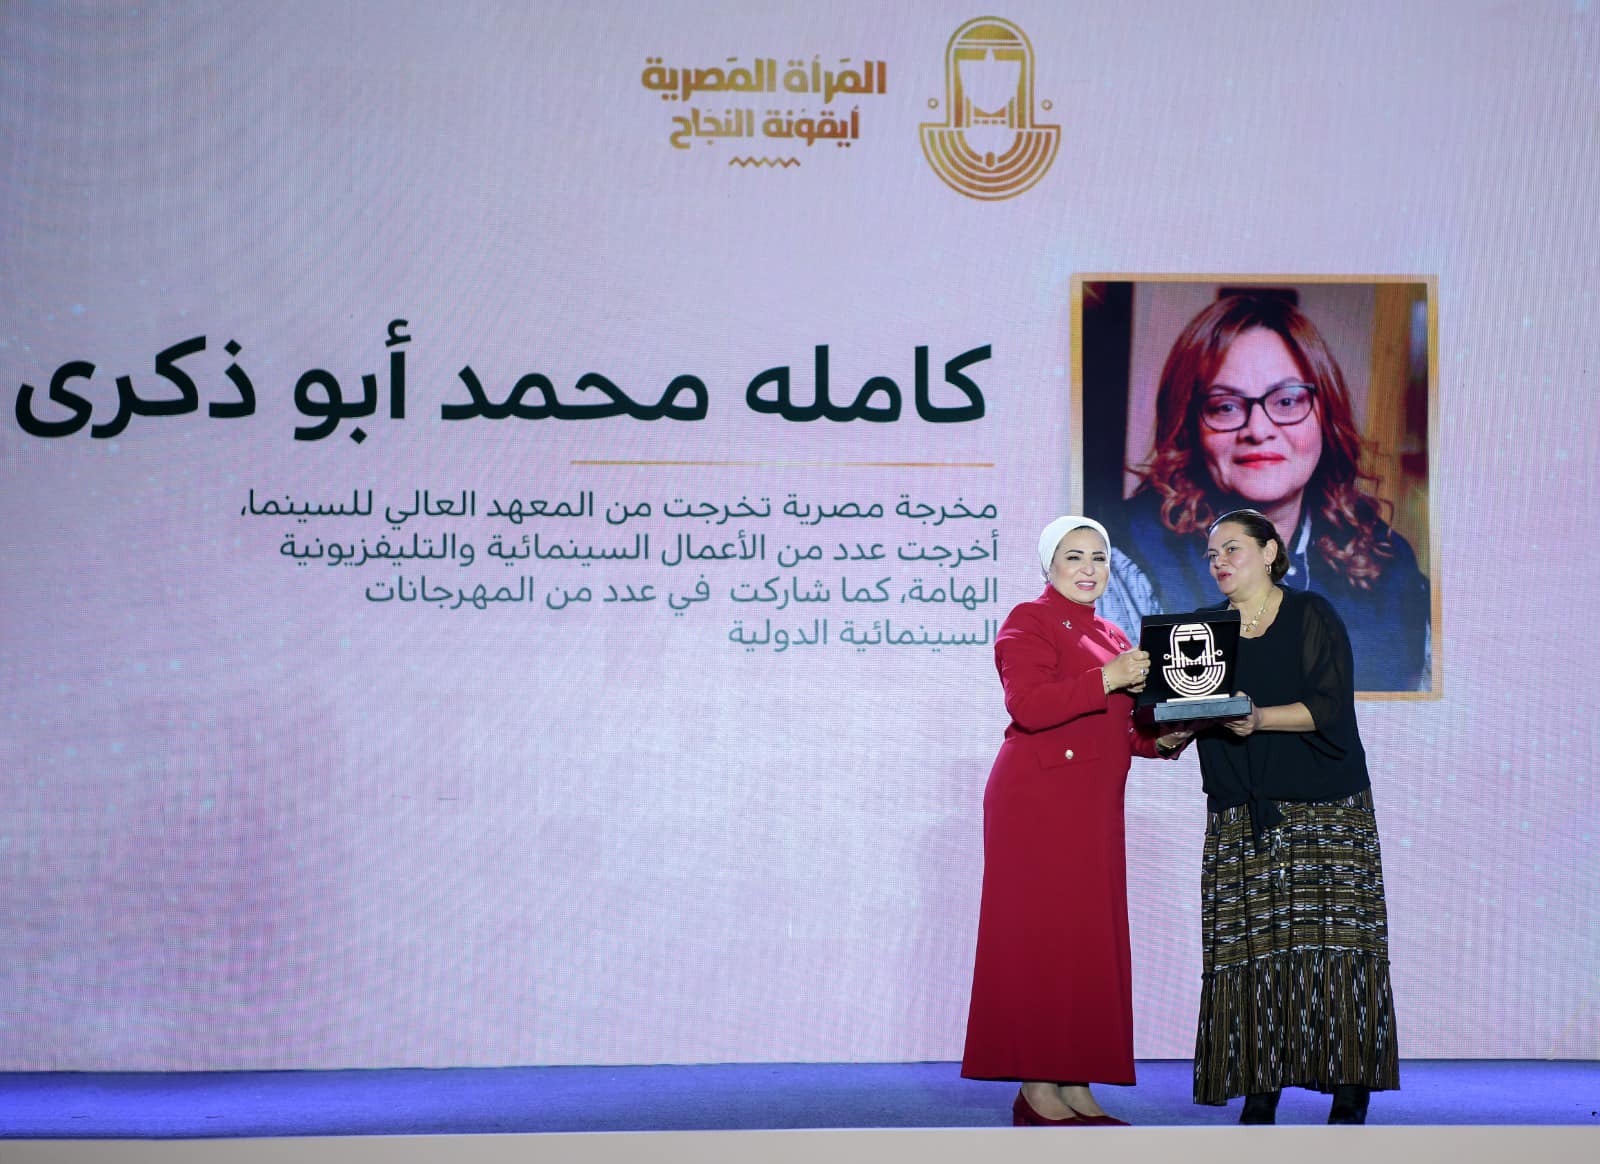 انتصار السيسي: المرأة المصرية مصدر إلهام ورمزا للتميز والعطاء 14